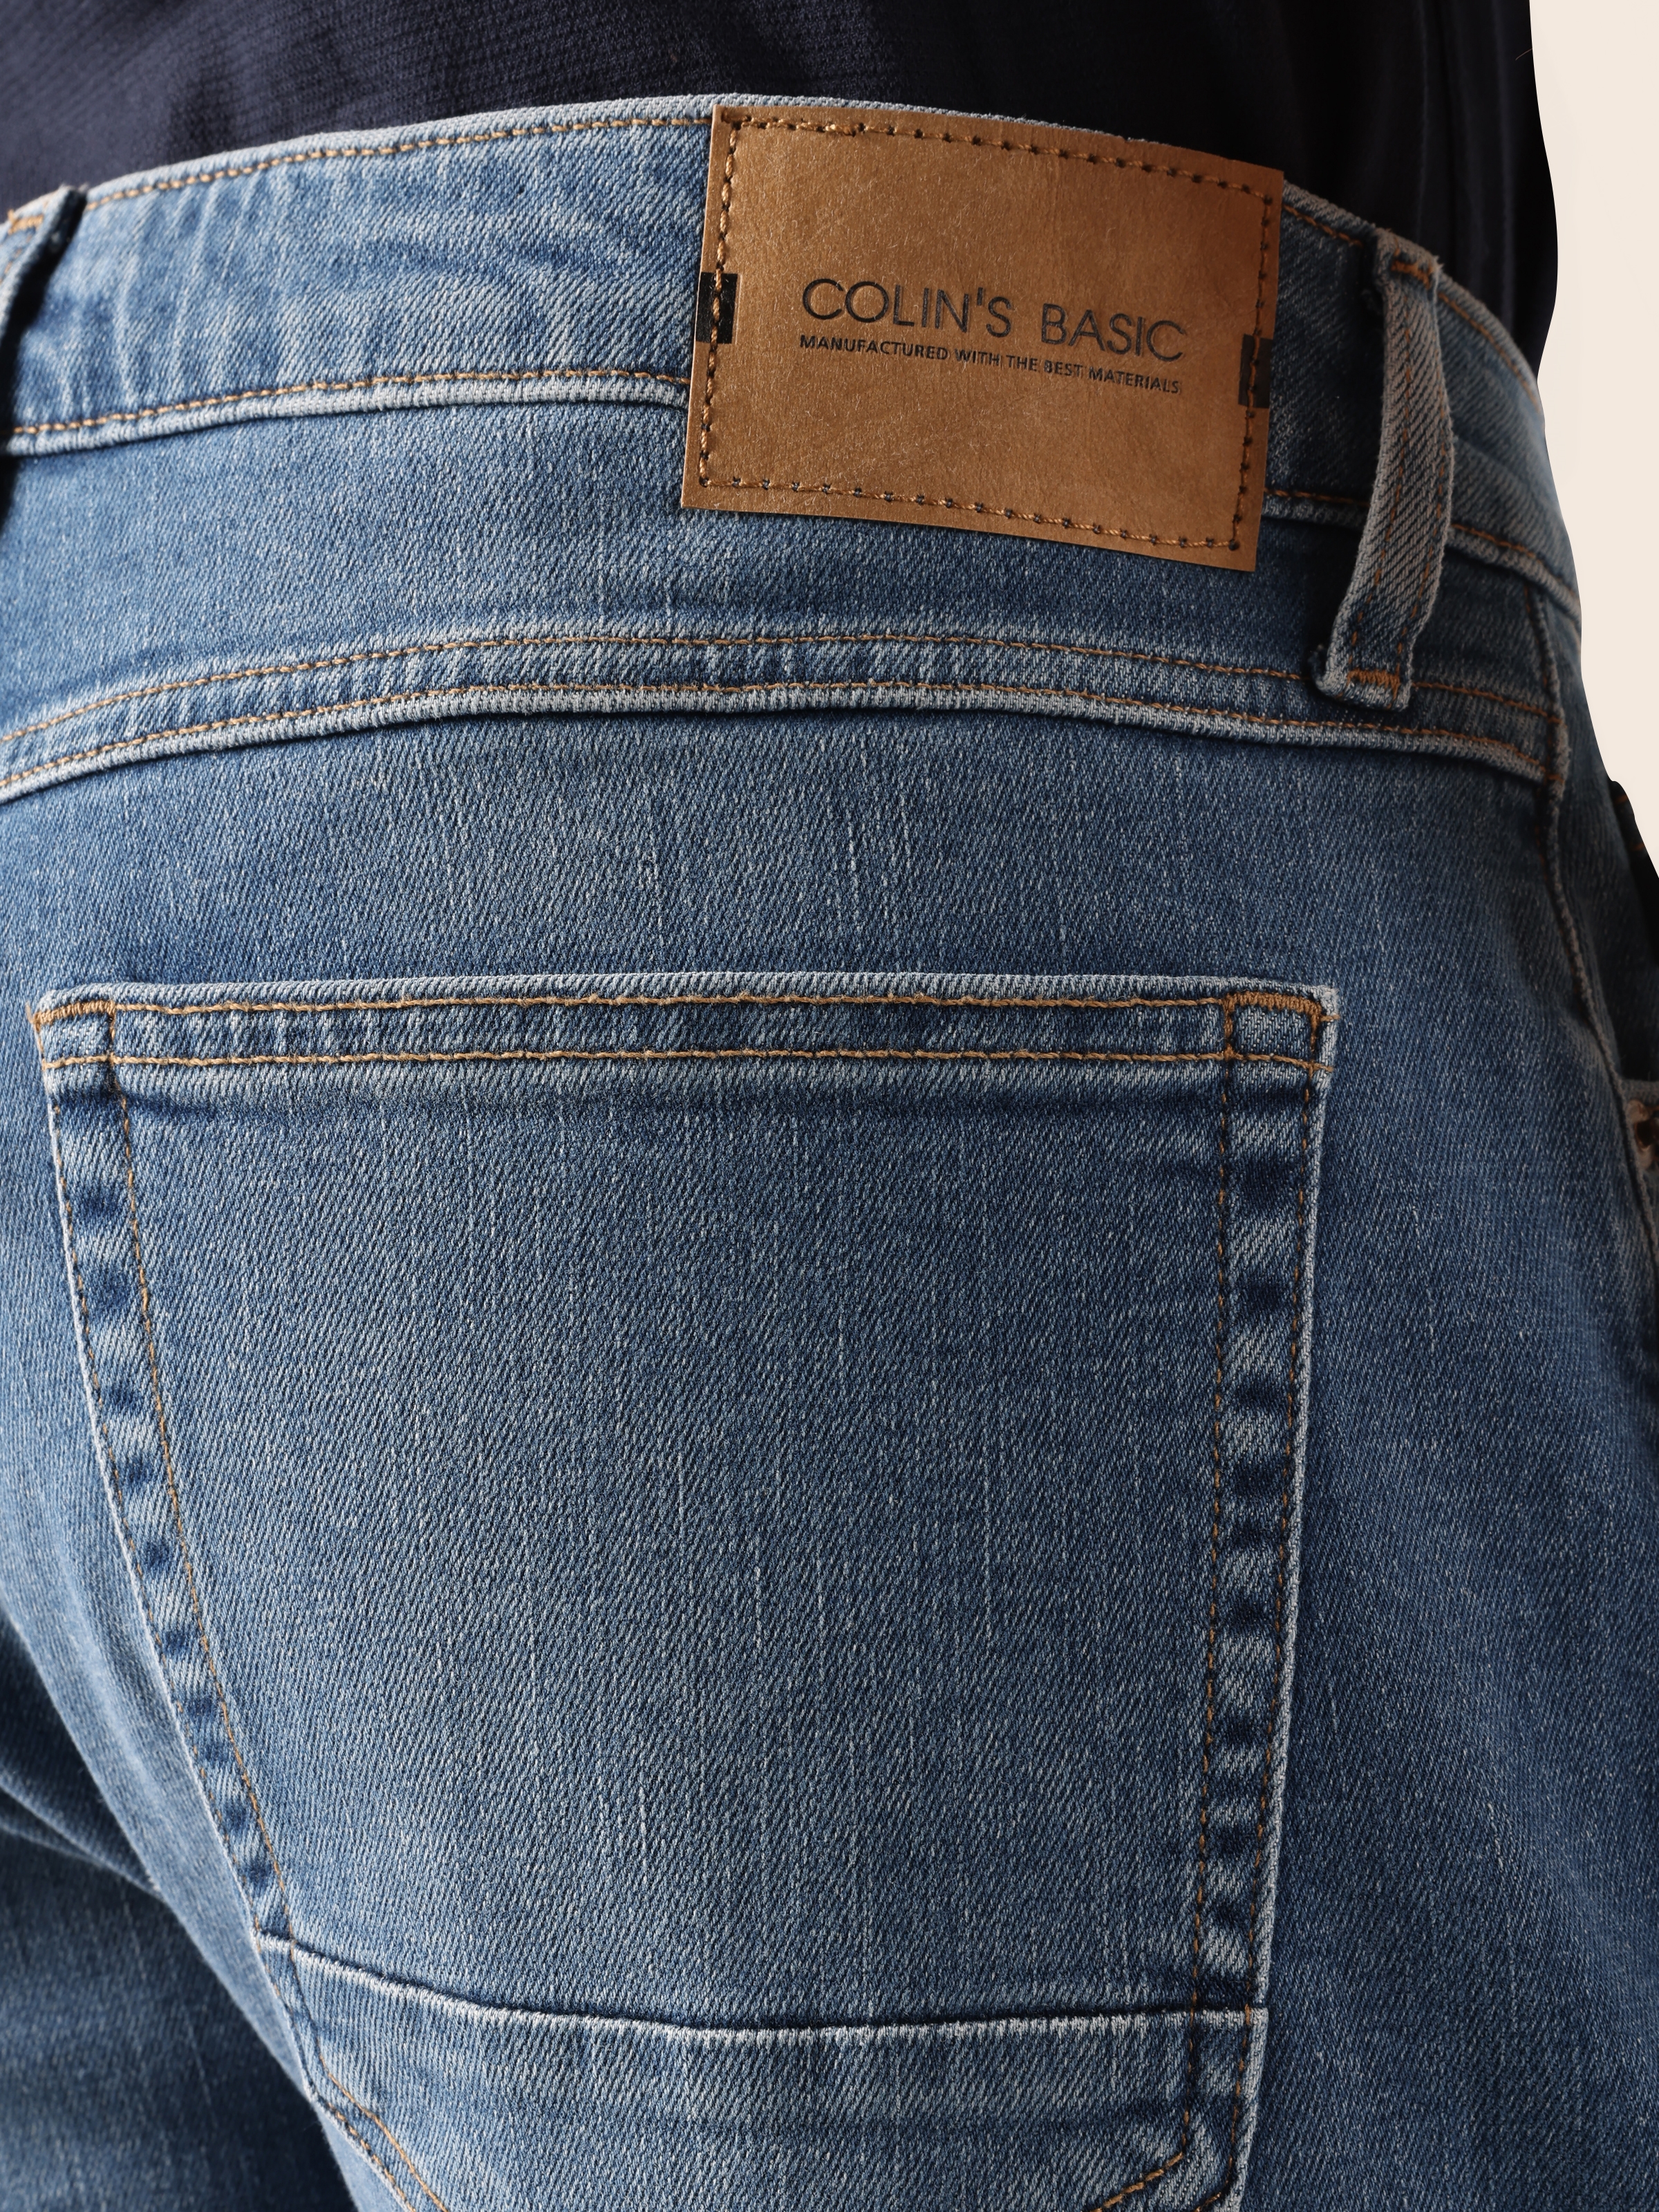 Afficher les détails de 067 Jack Pantalon En Jean Bleu Pour Homme, Taille Moyenne, Coupe Régulière, Jambe Droite